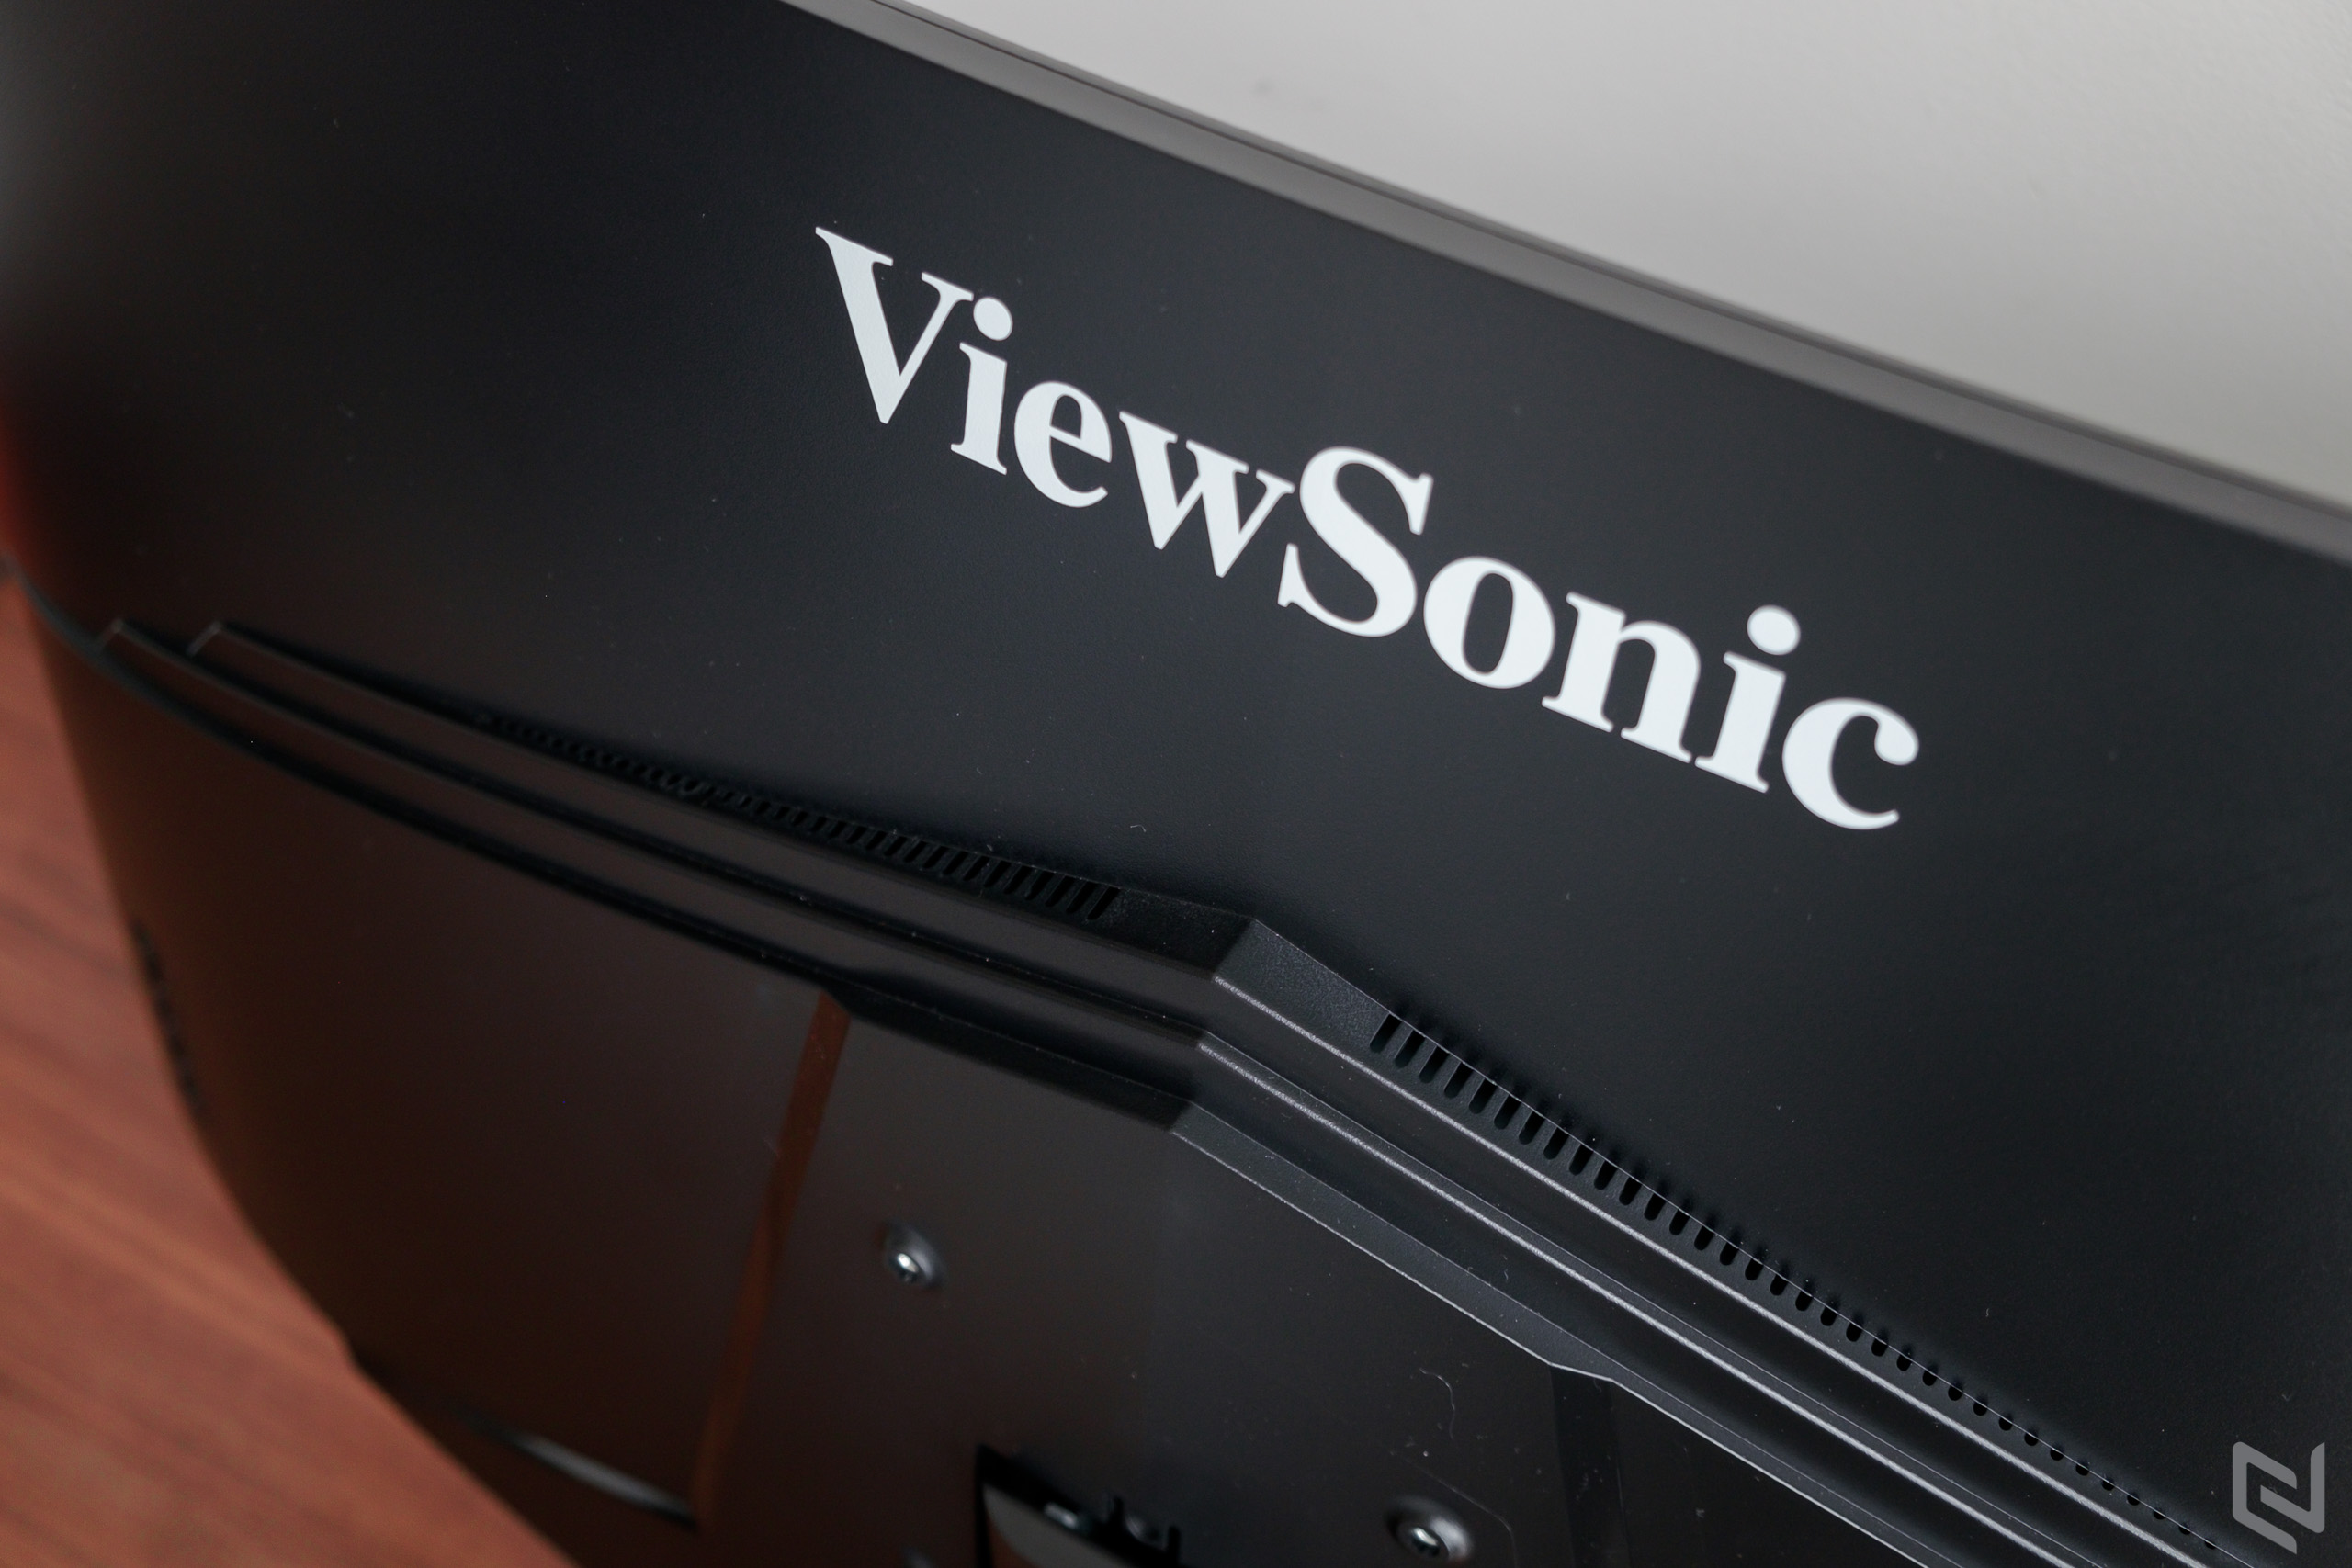 Đánh giá màn hình chơi game ViewSonic VX3218: 165Hz, cong 1500R, giá hợp lý